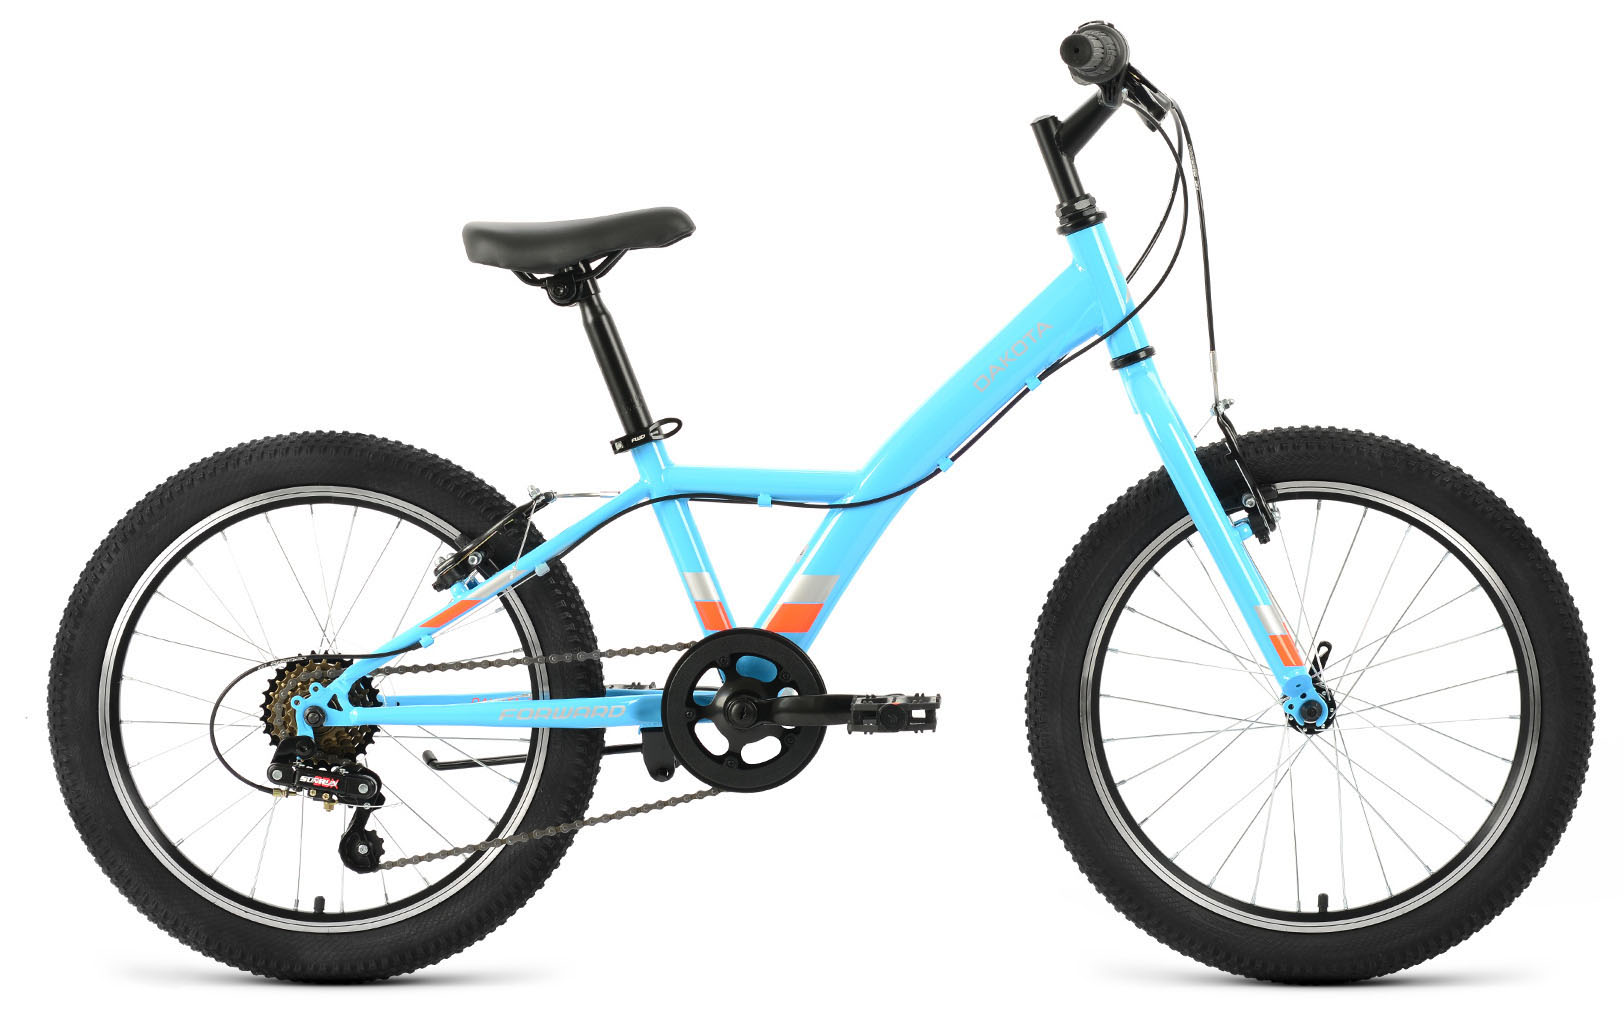  Отзывы о Детском велосипеде Forward Dakota 20 1.0 2020